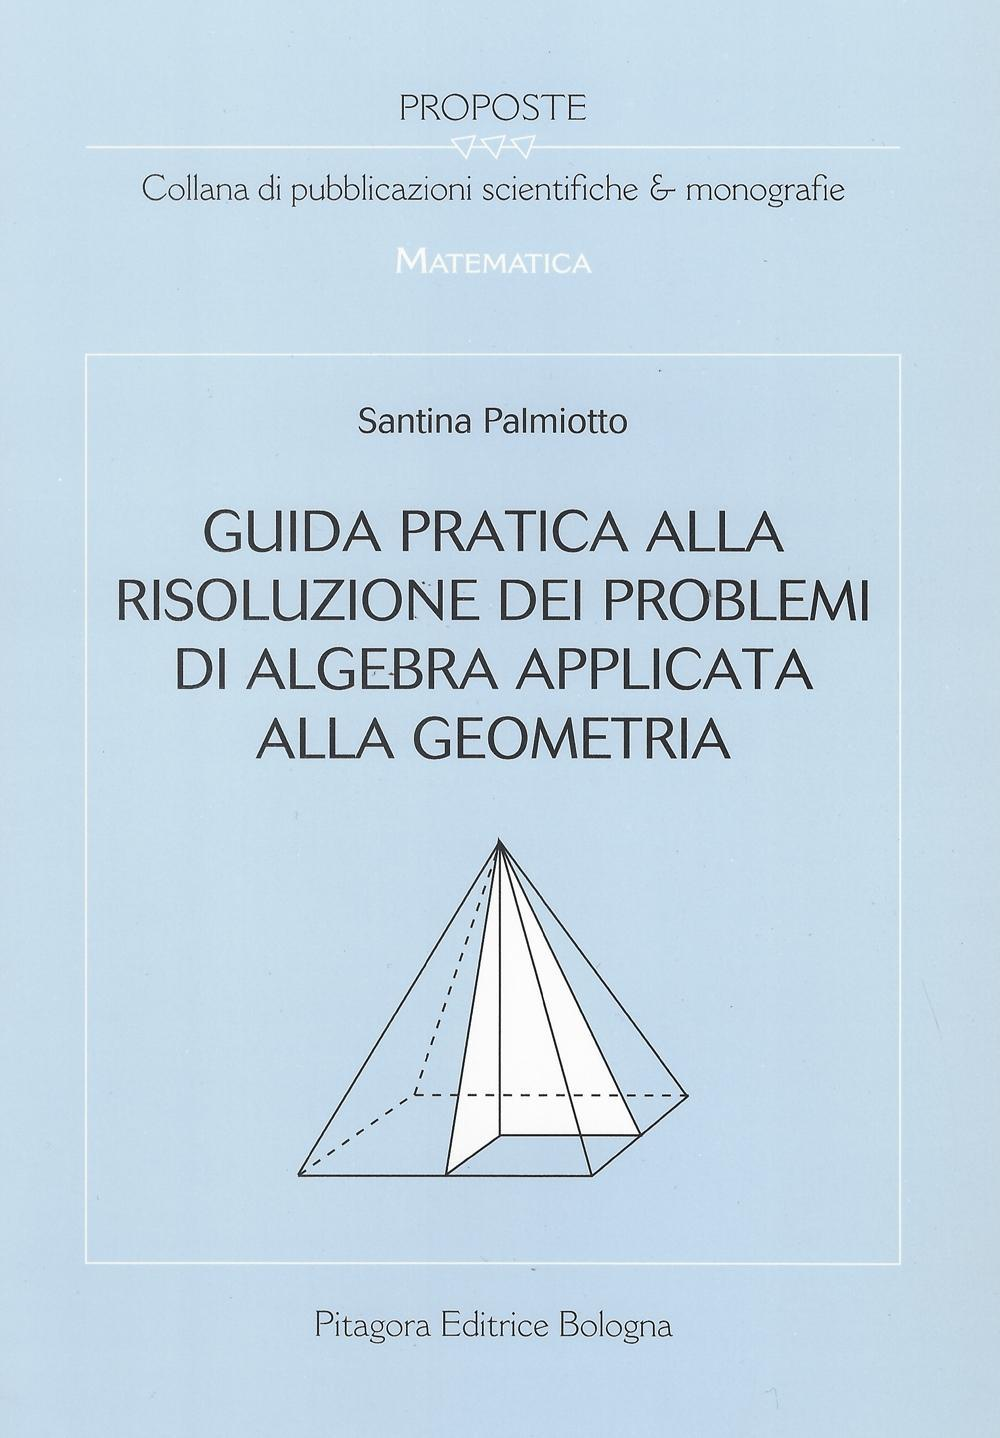 Image of Guida pratica alla risoluzione dei problemi di algebra applicata alla geometria